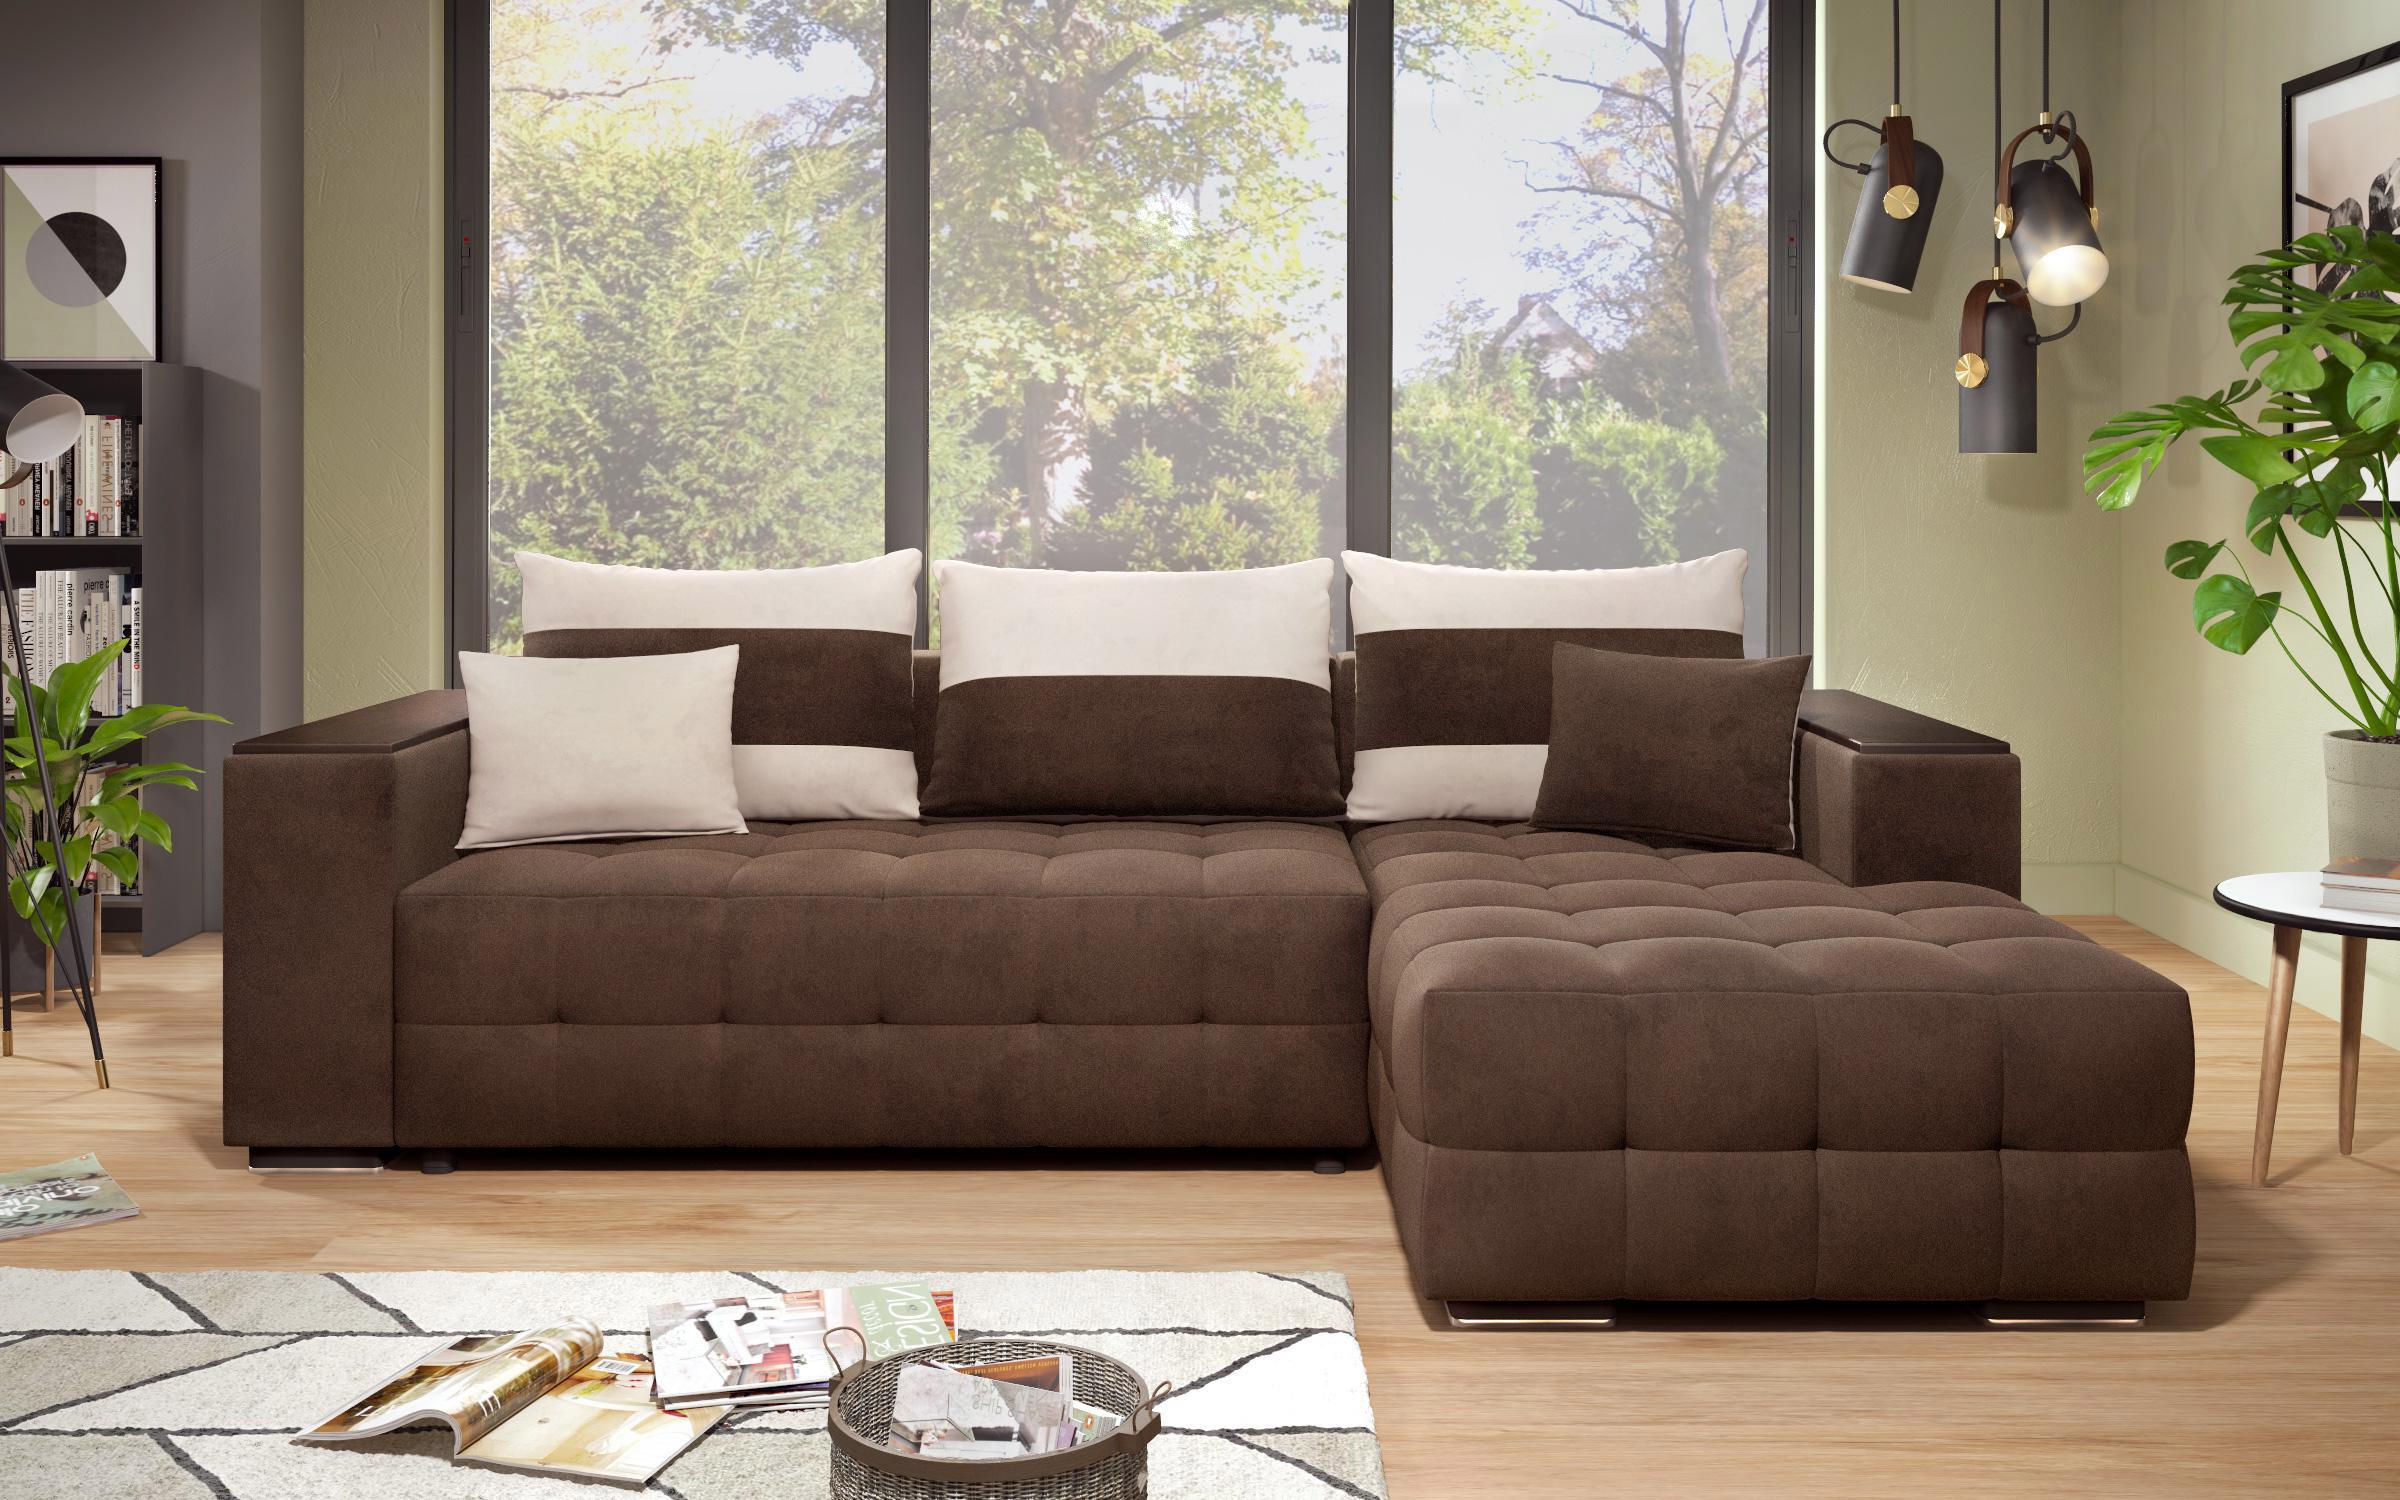 Γωνιακός καναπές - κρεβάτι με ανάκλιντρο και μπράτσο μίνι ραφιέρα Melvin S, σκούρο καφέ + ανοιχτό μπεζ  2